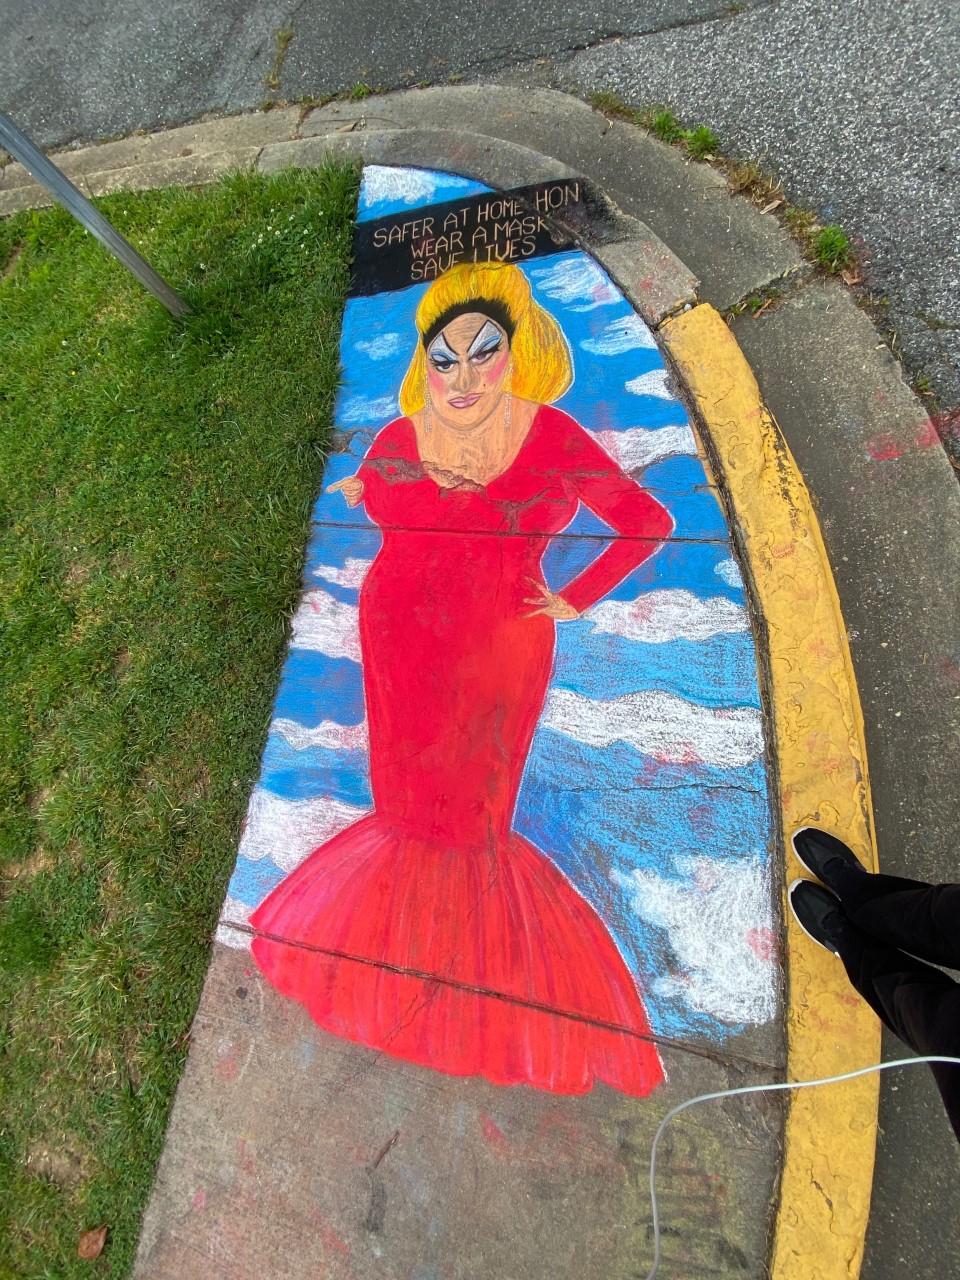 The Sidewalk Artist by Gina Buonaguro